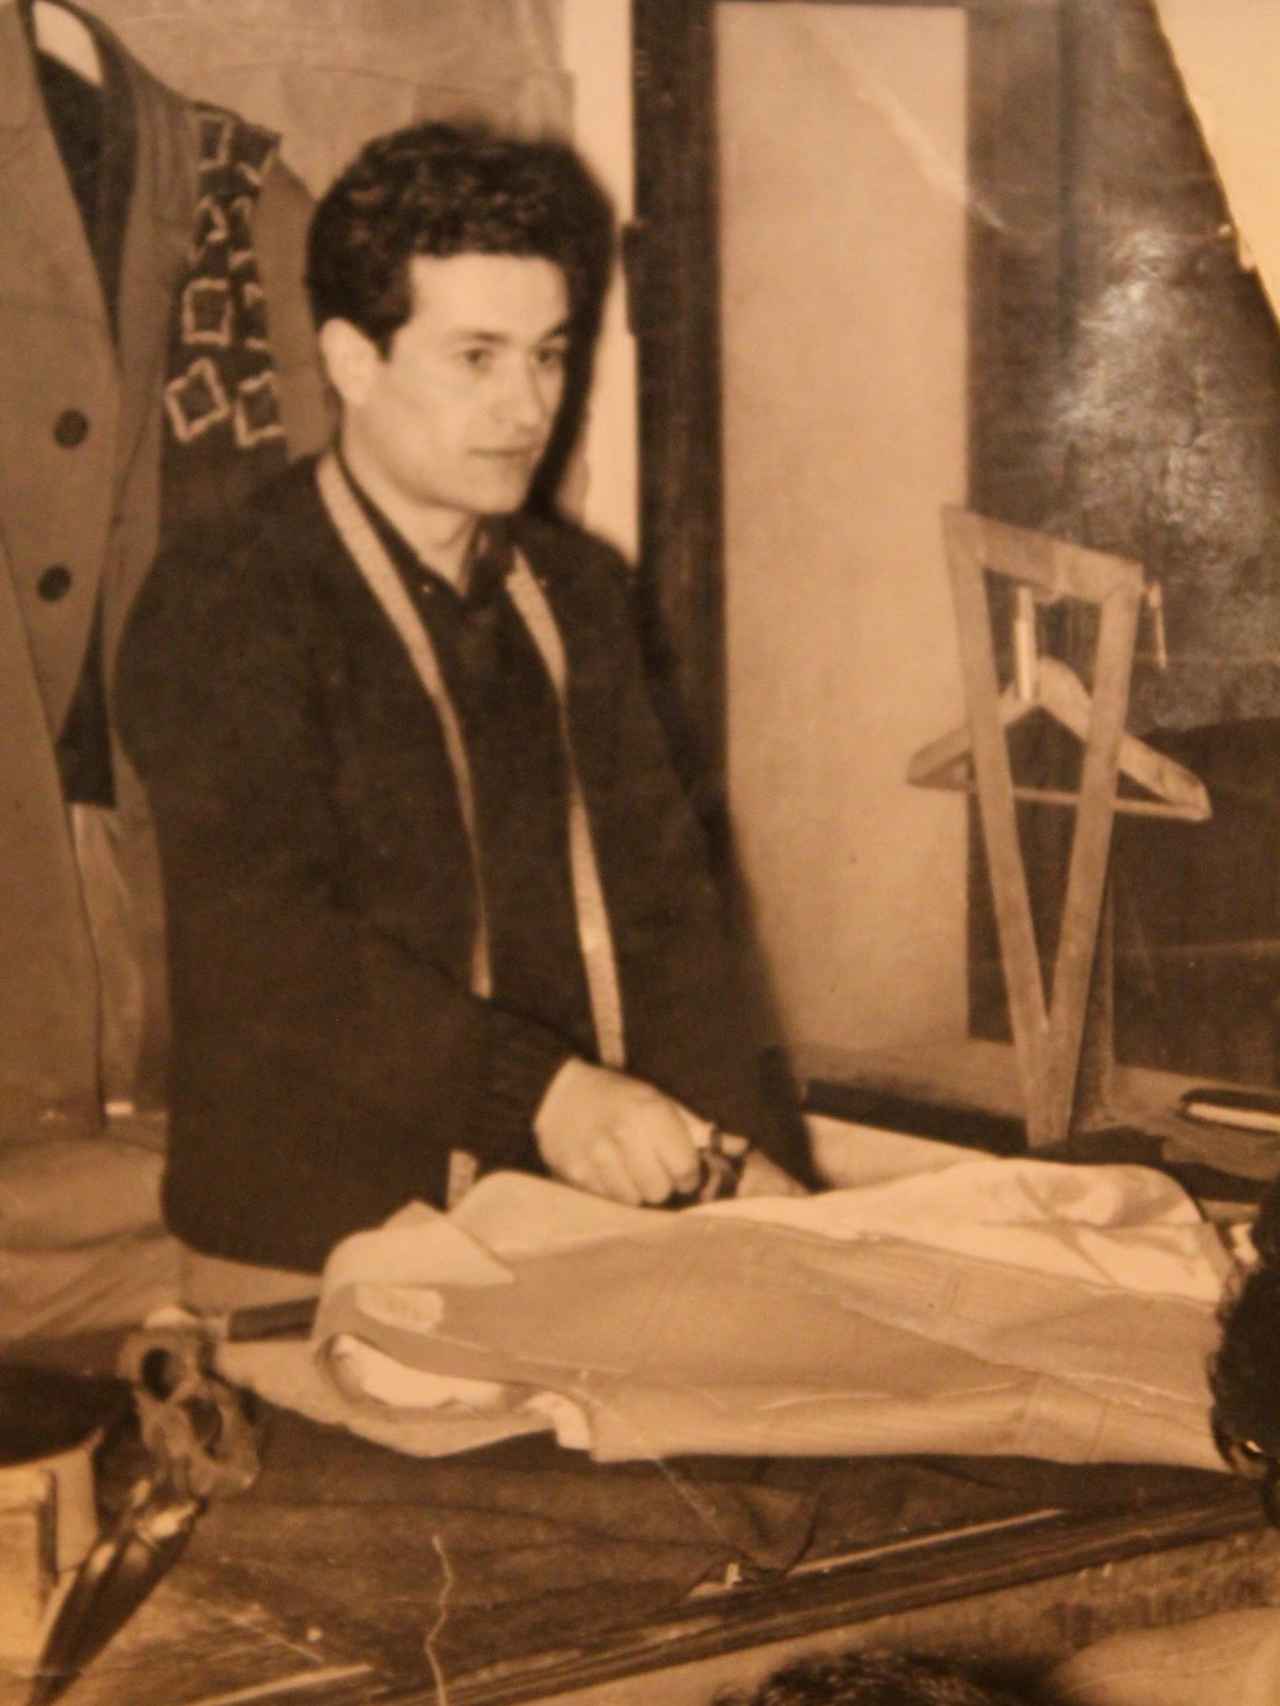 El padre de Bere Casillas, Francisco, en una imagen de 1960.